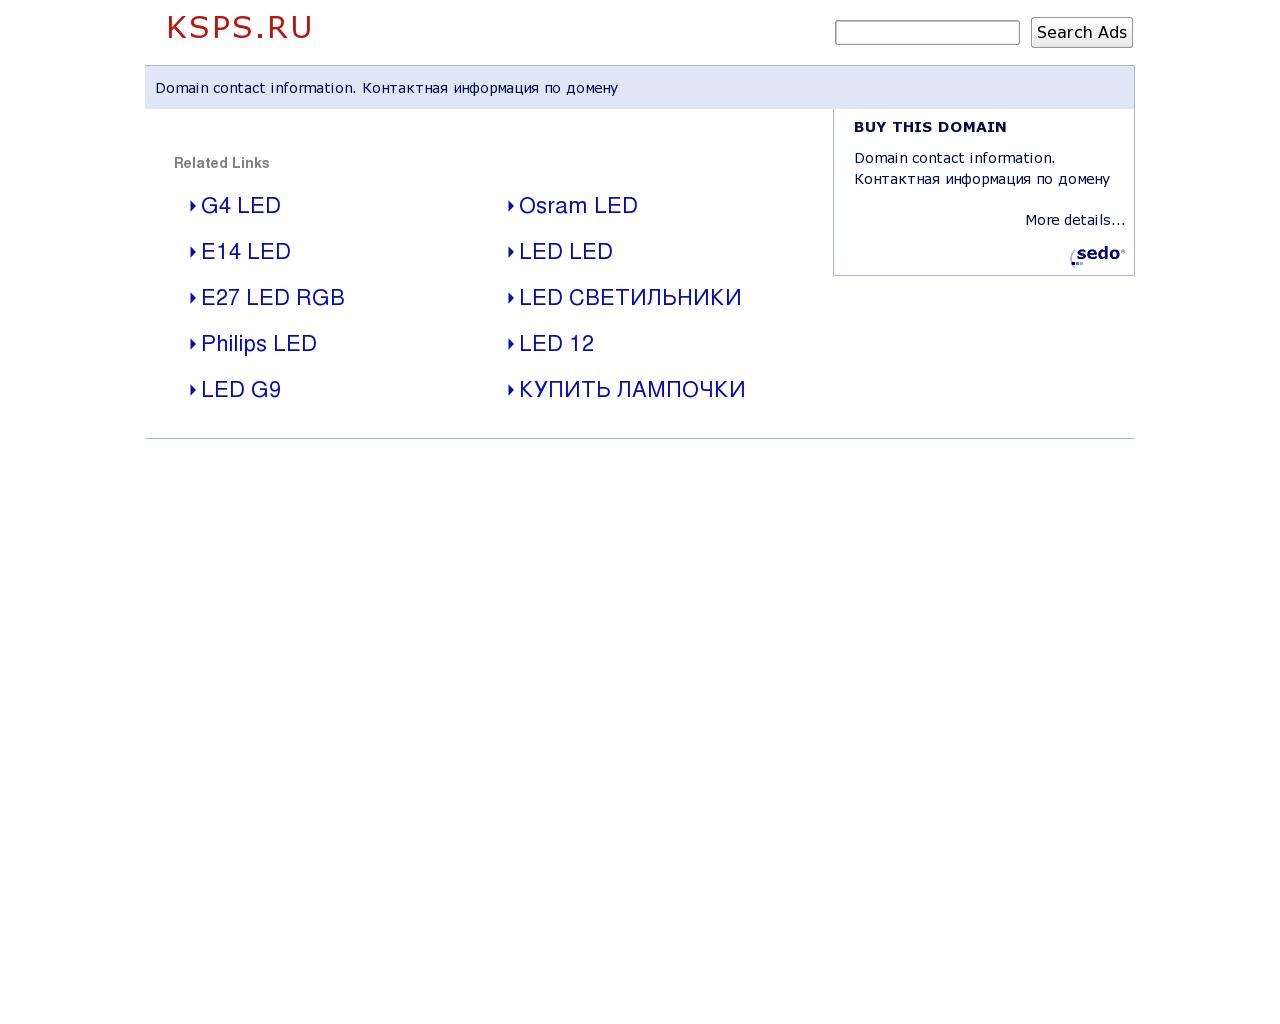 Изображение сайта ksps.ru в разрешении 1280x1024